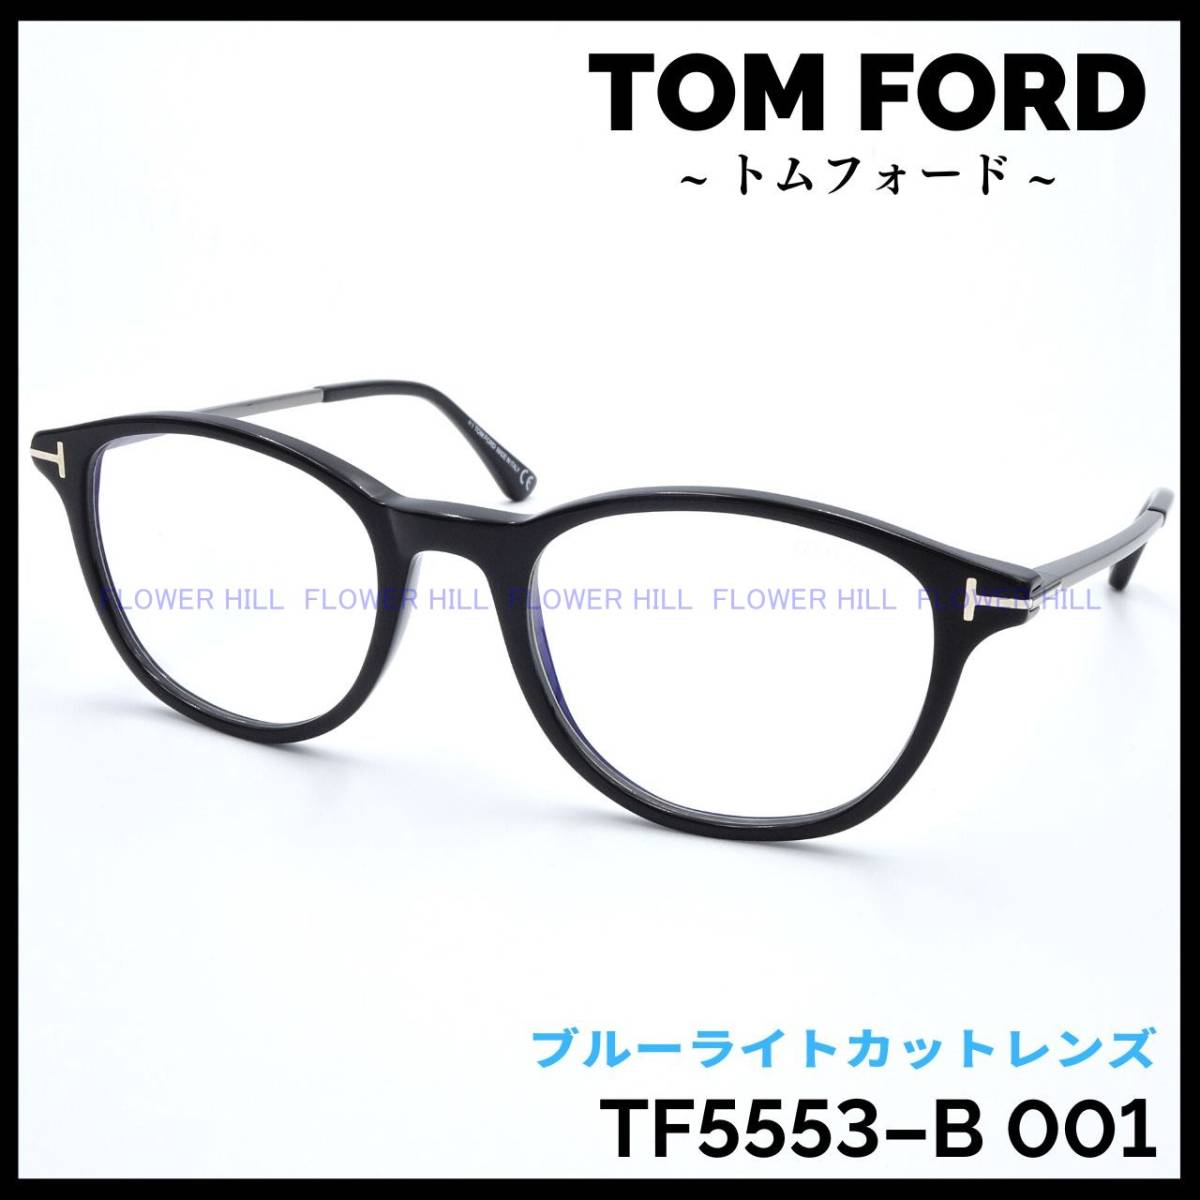 【新品・送料無料】トムフォード TOM FORD TF5553-B 001 メガネ 眼鏡 フレーム ブラック ブルーライトカット ボストン メンズ レディース